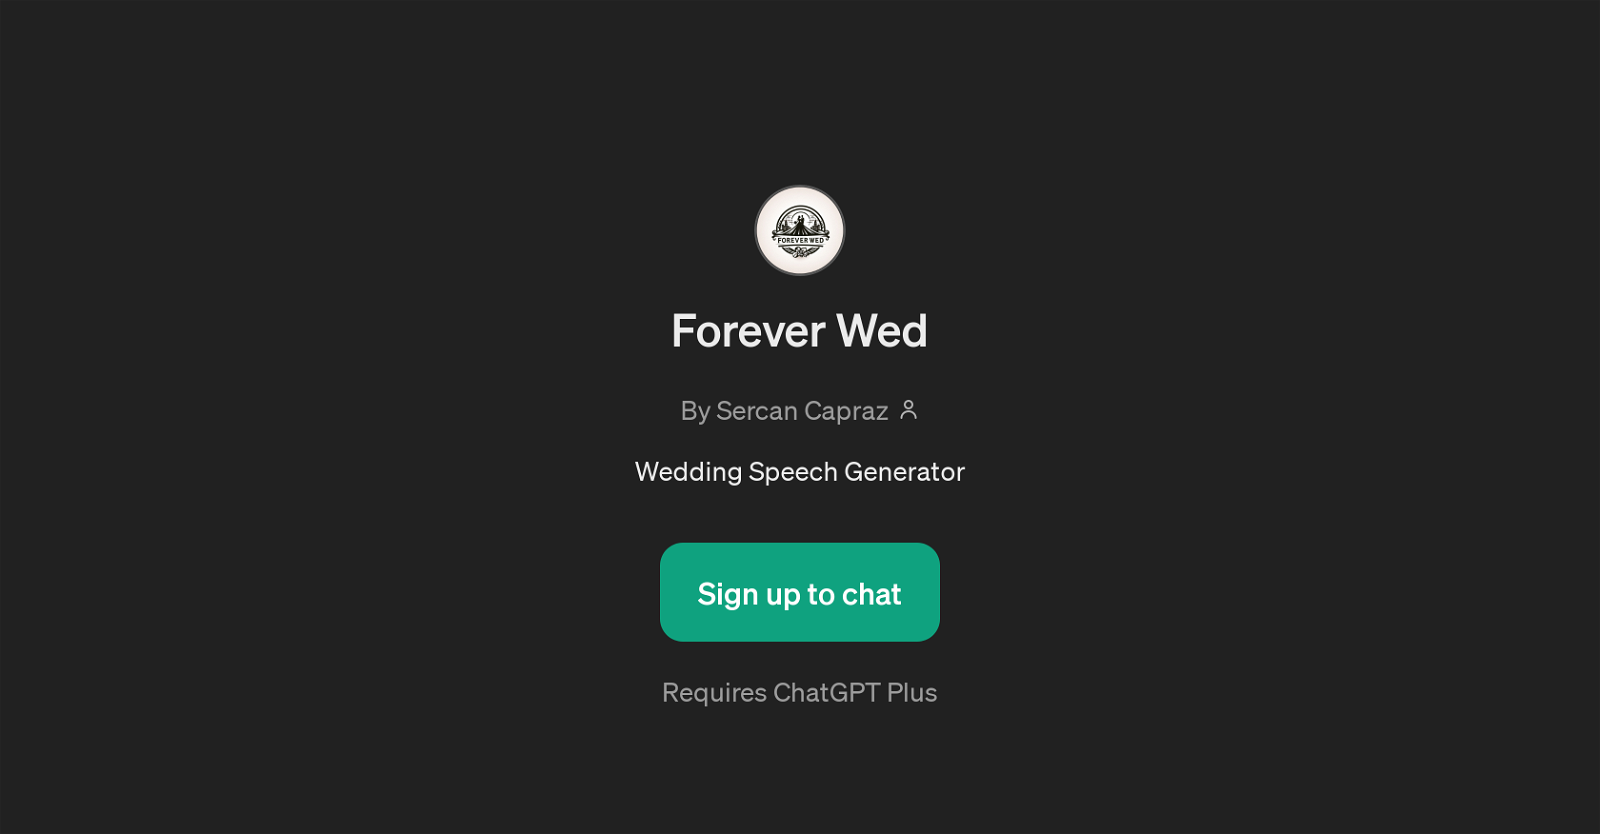 Forever Wed website